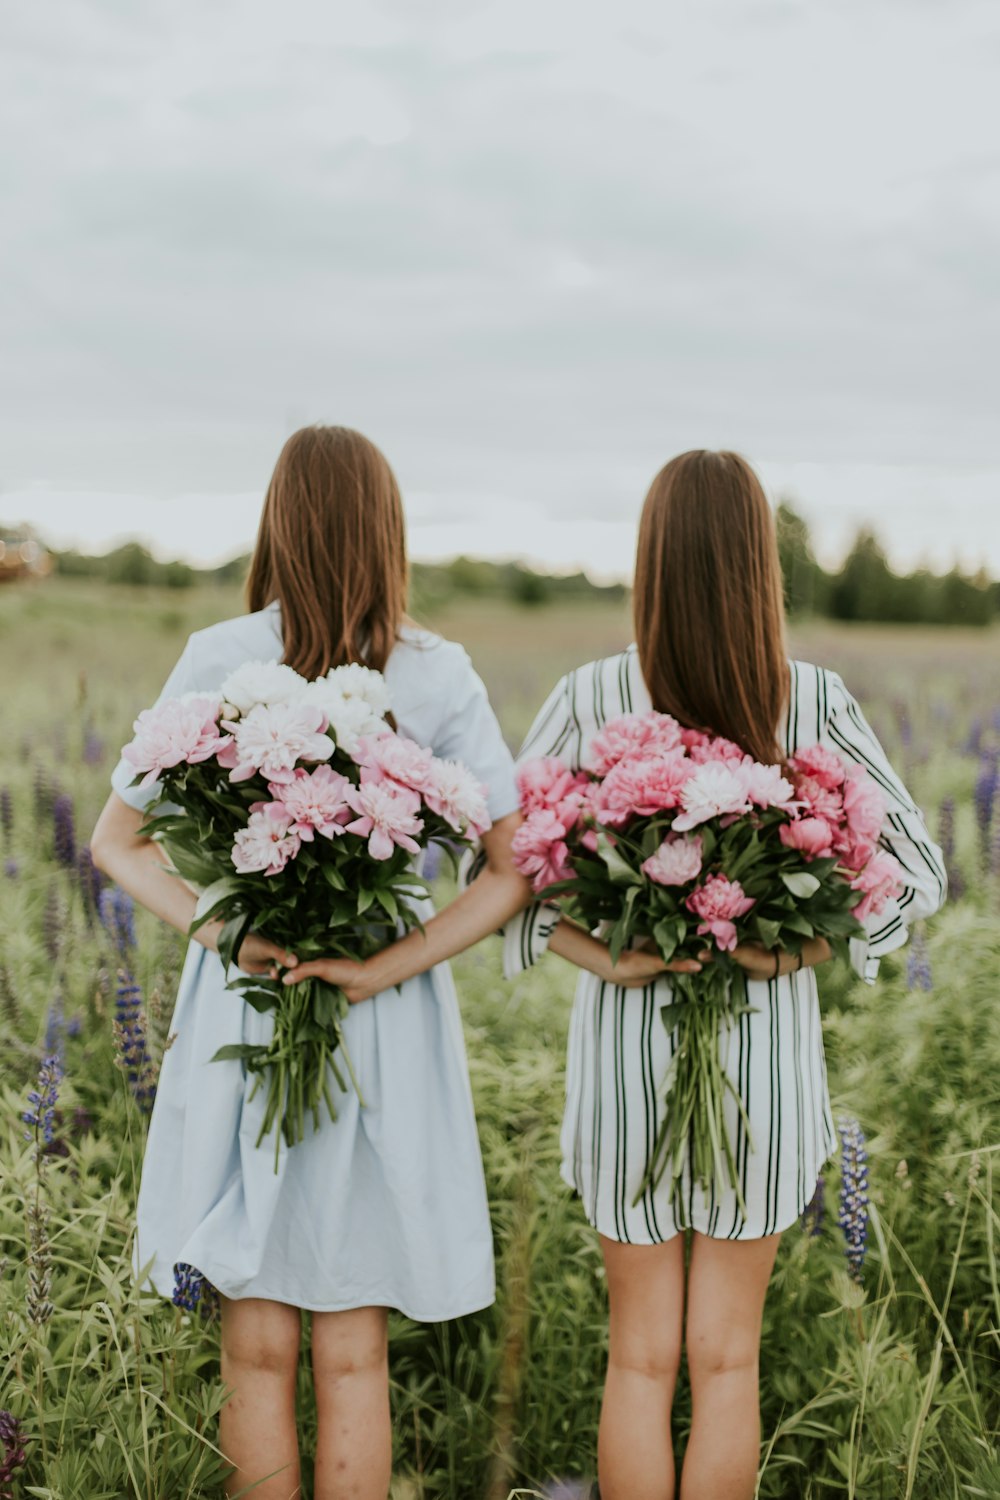 꽃다발을 들고 있는 두 여자의 사진